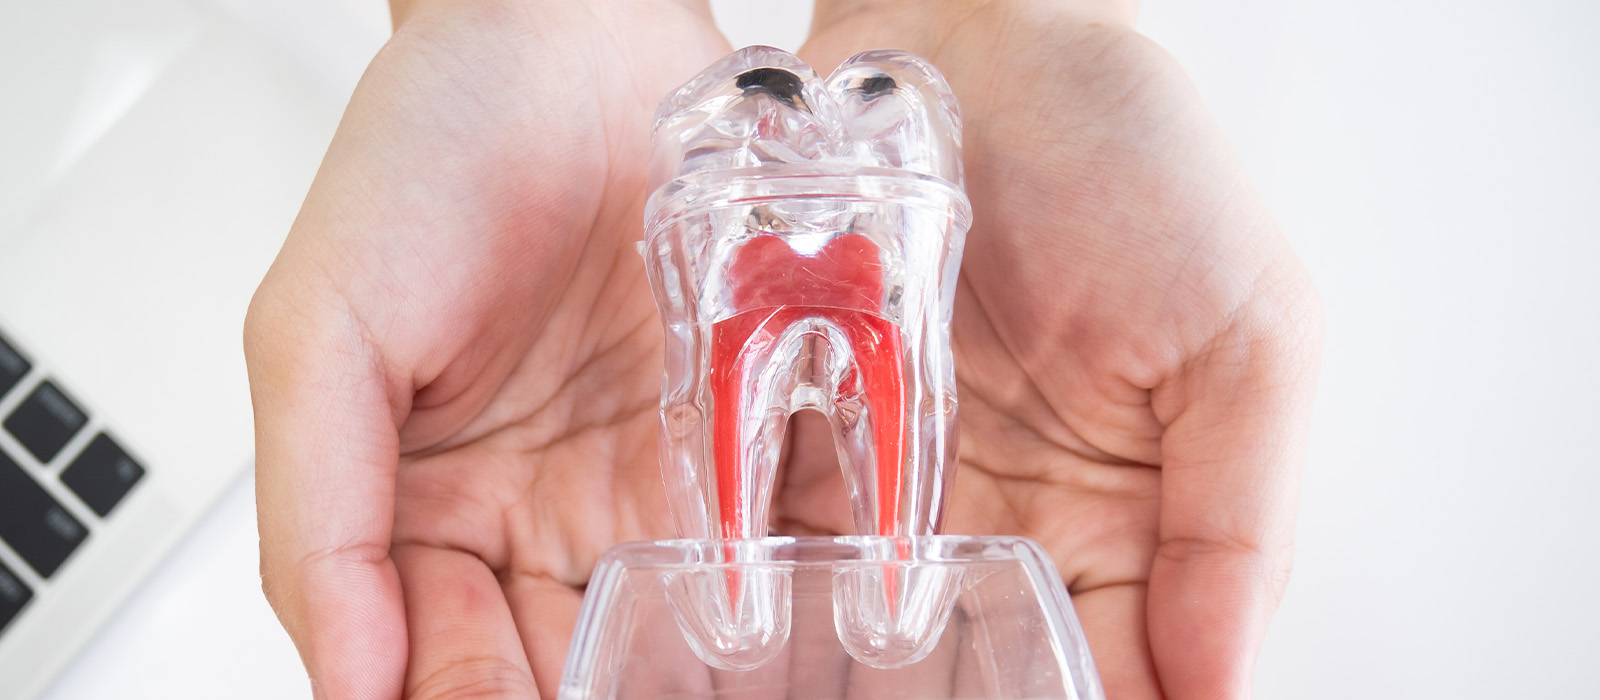 歯を残す治療を選択した場合のメリット・デメリット